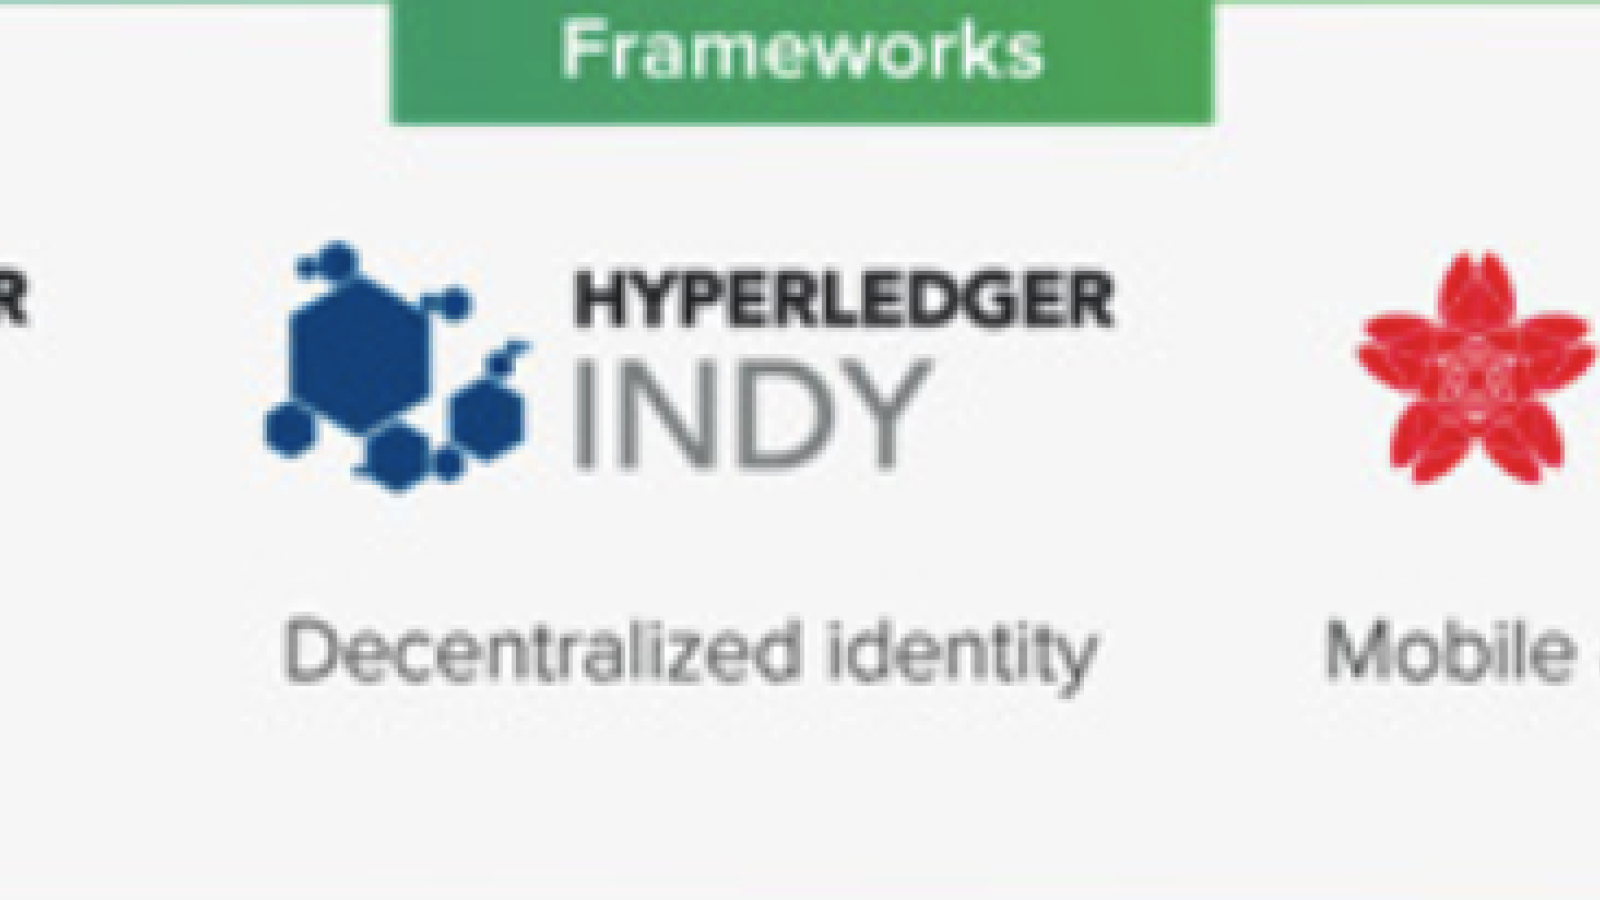 Hyperledger frameworks